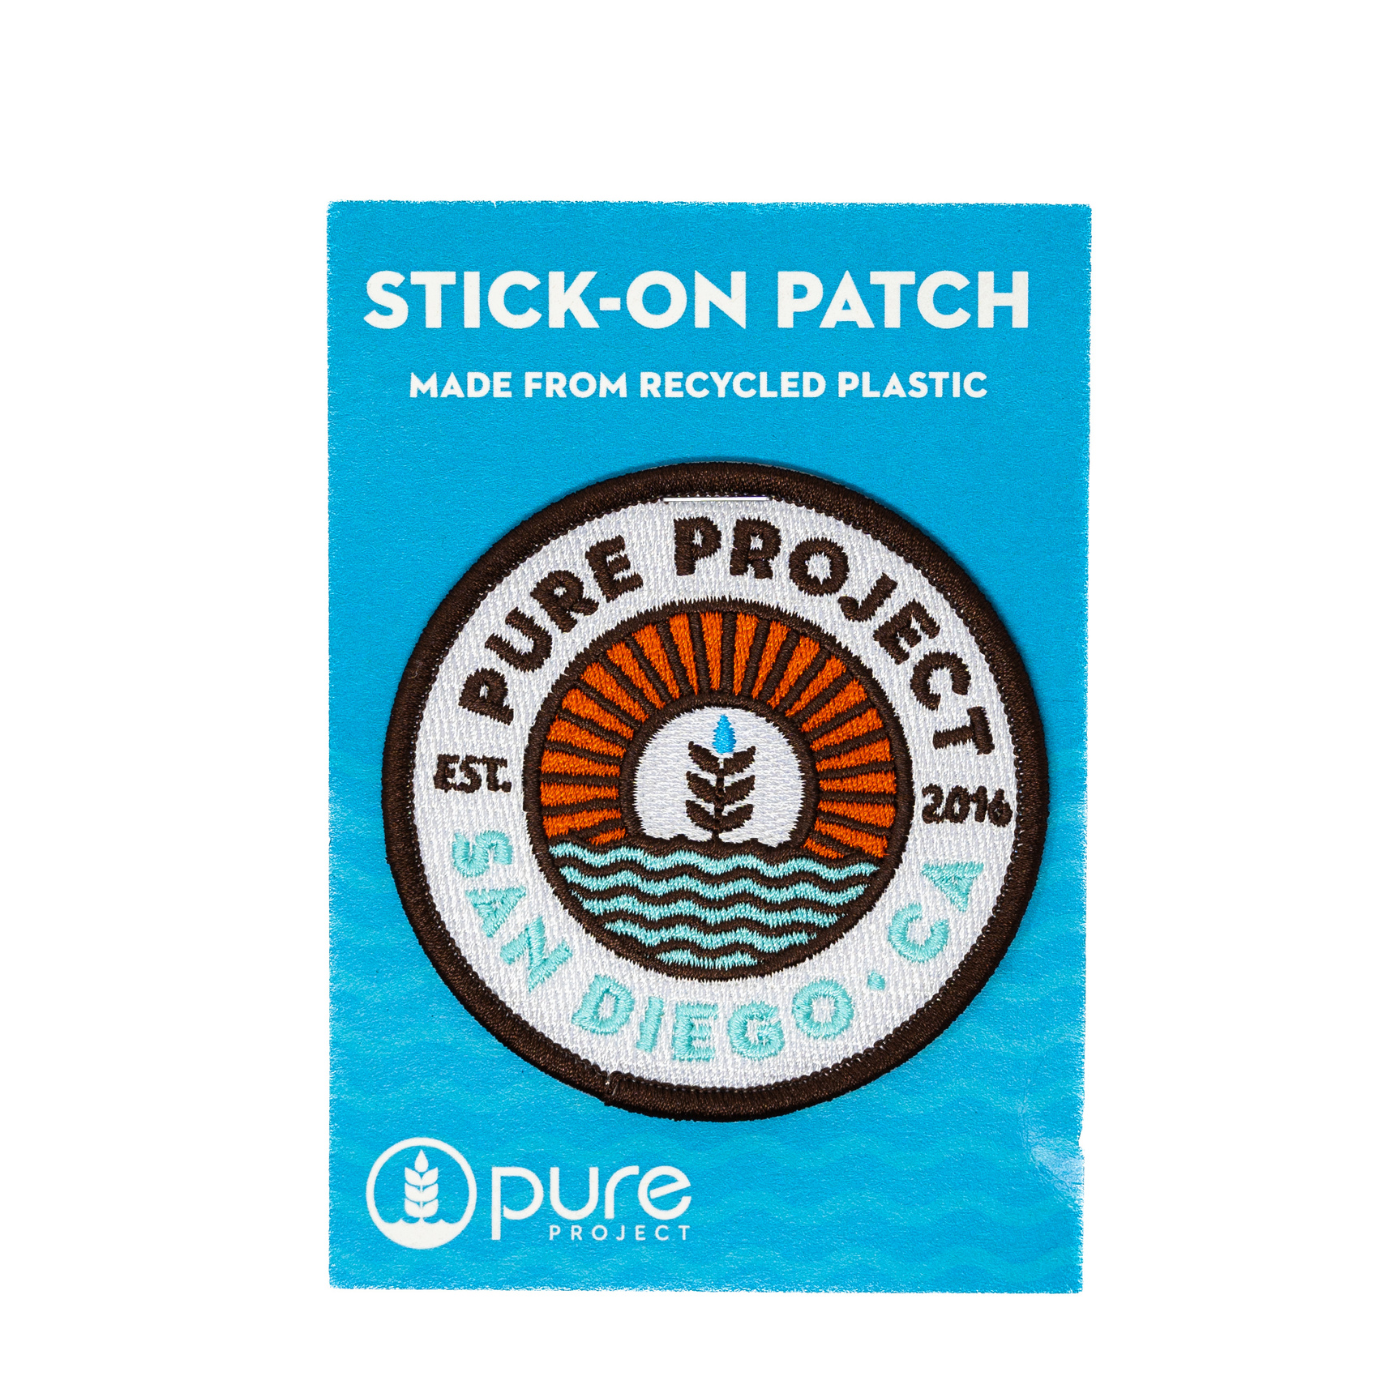 Stick-On Patch